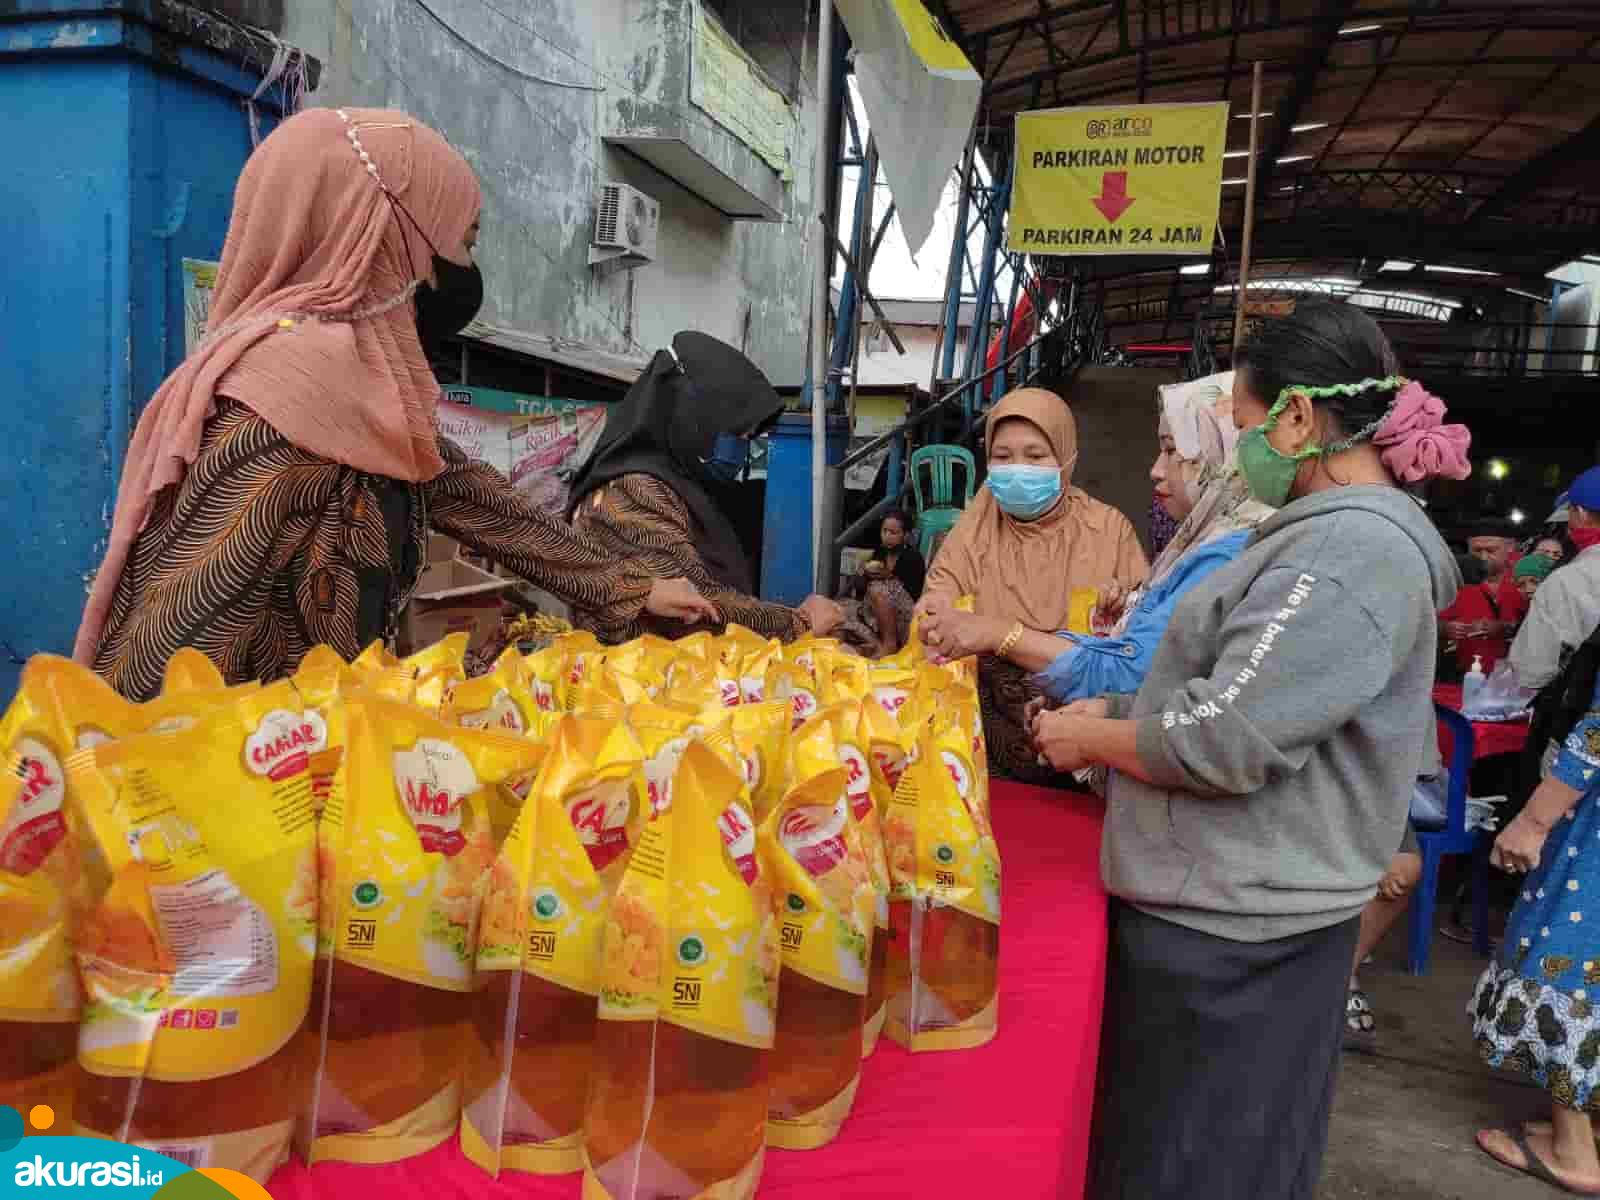 Penjualan minyak goreng murah melalui operasi pasar di Samarinda- Akurasi.id